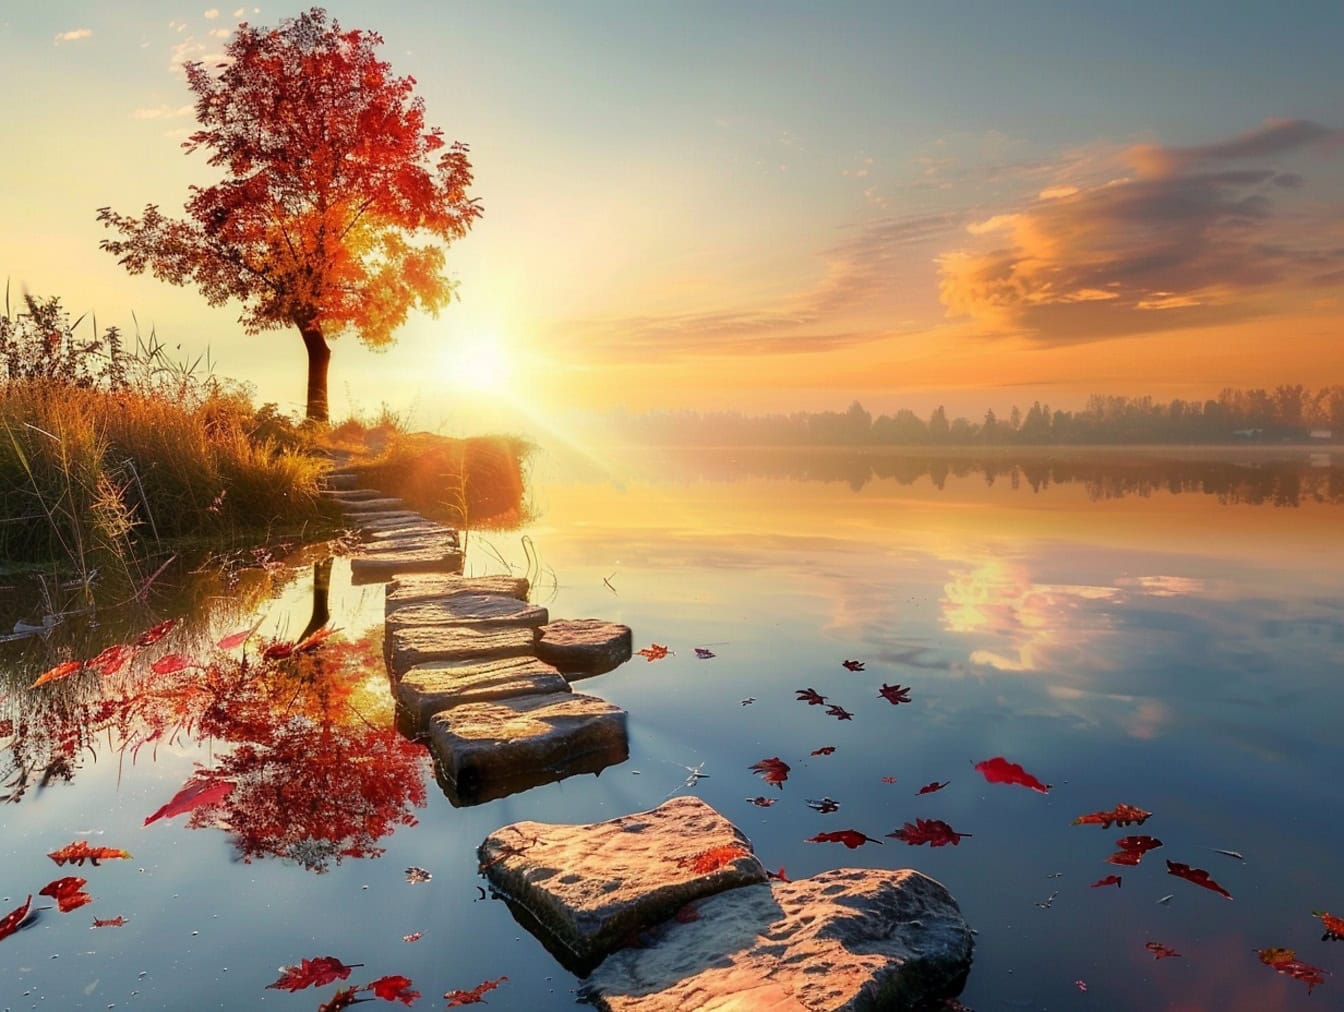 Кам’яна стежка в спокійному озері, що веде до дерева з червоним листям з осіннім заходом сонця